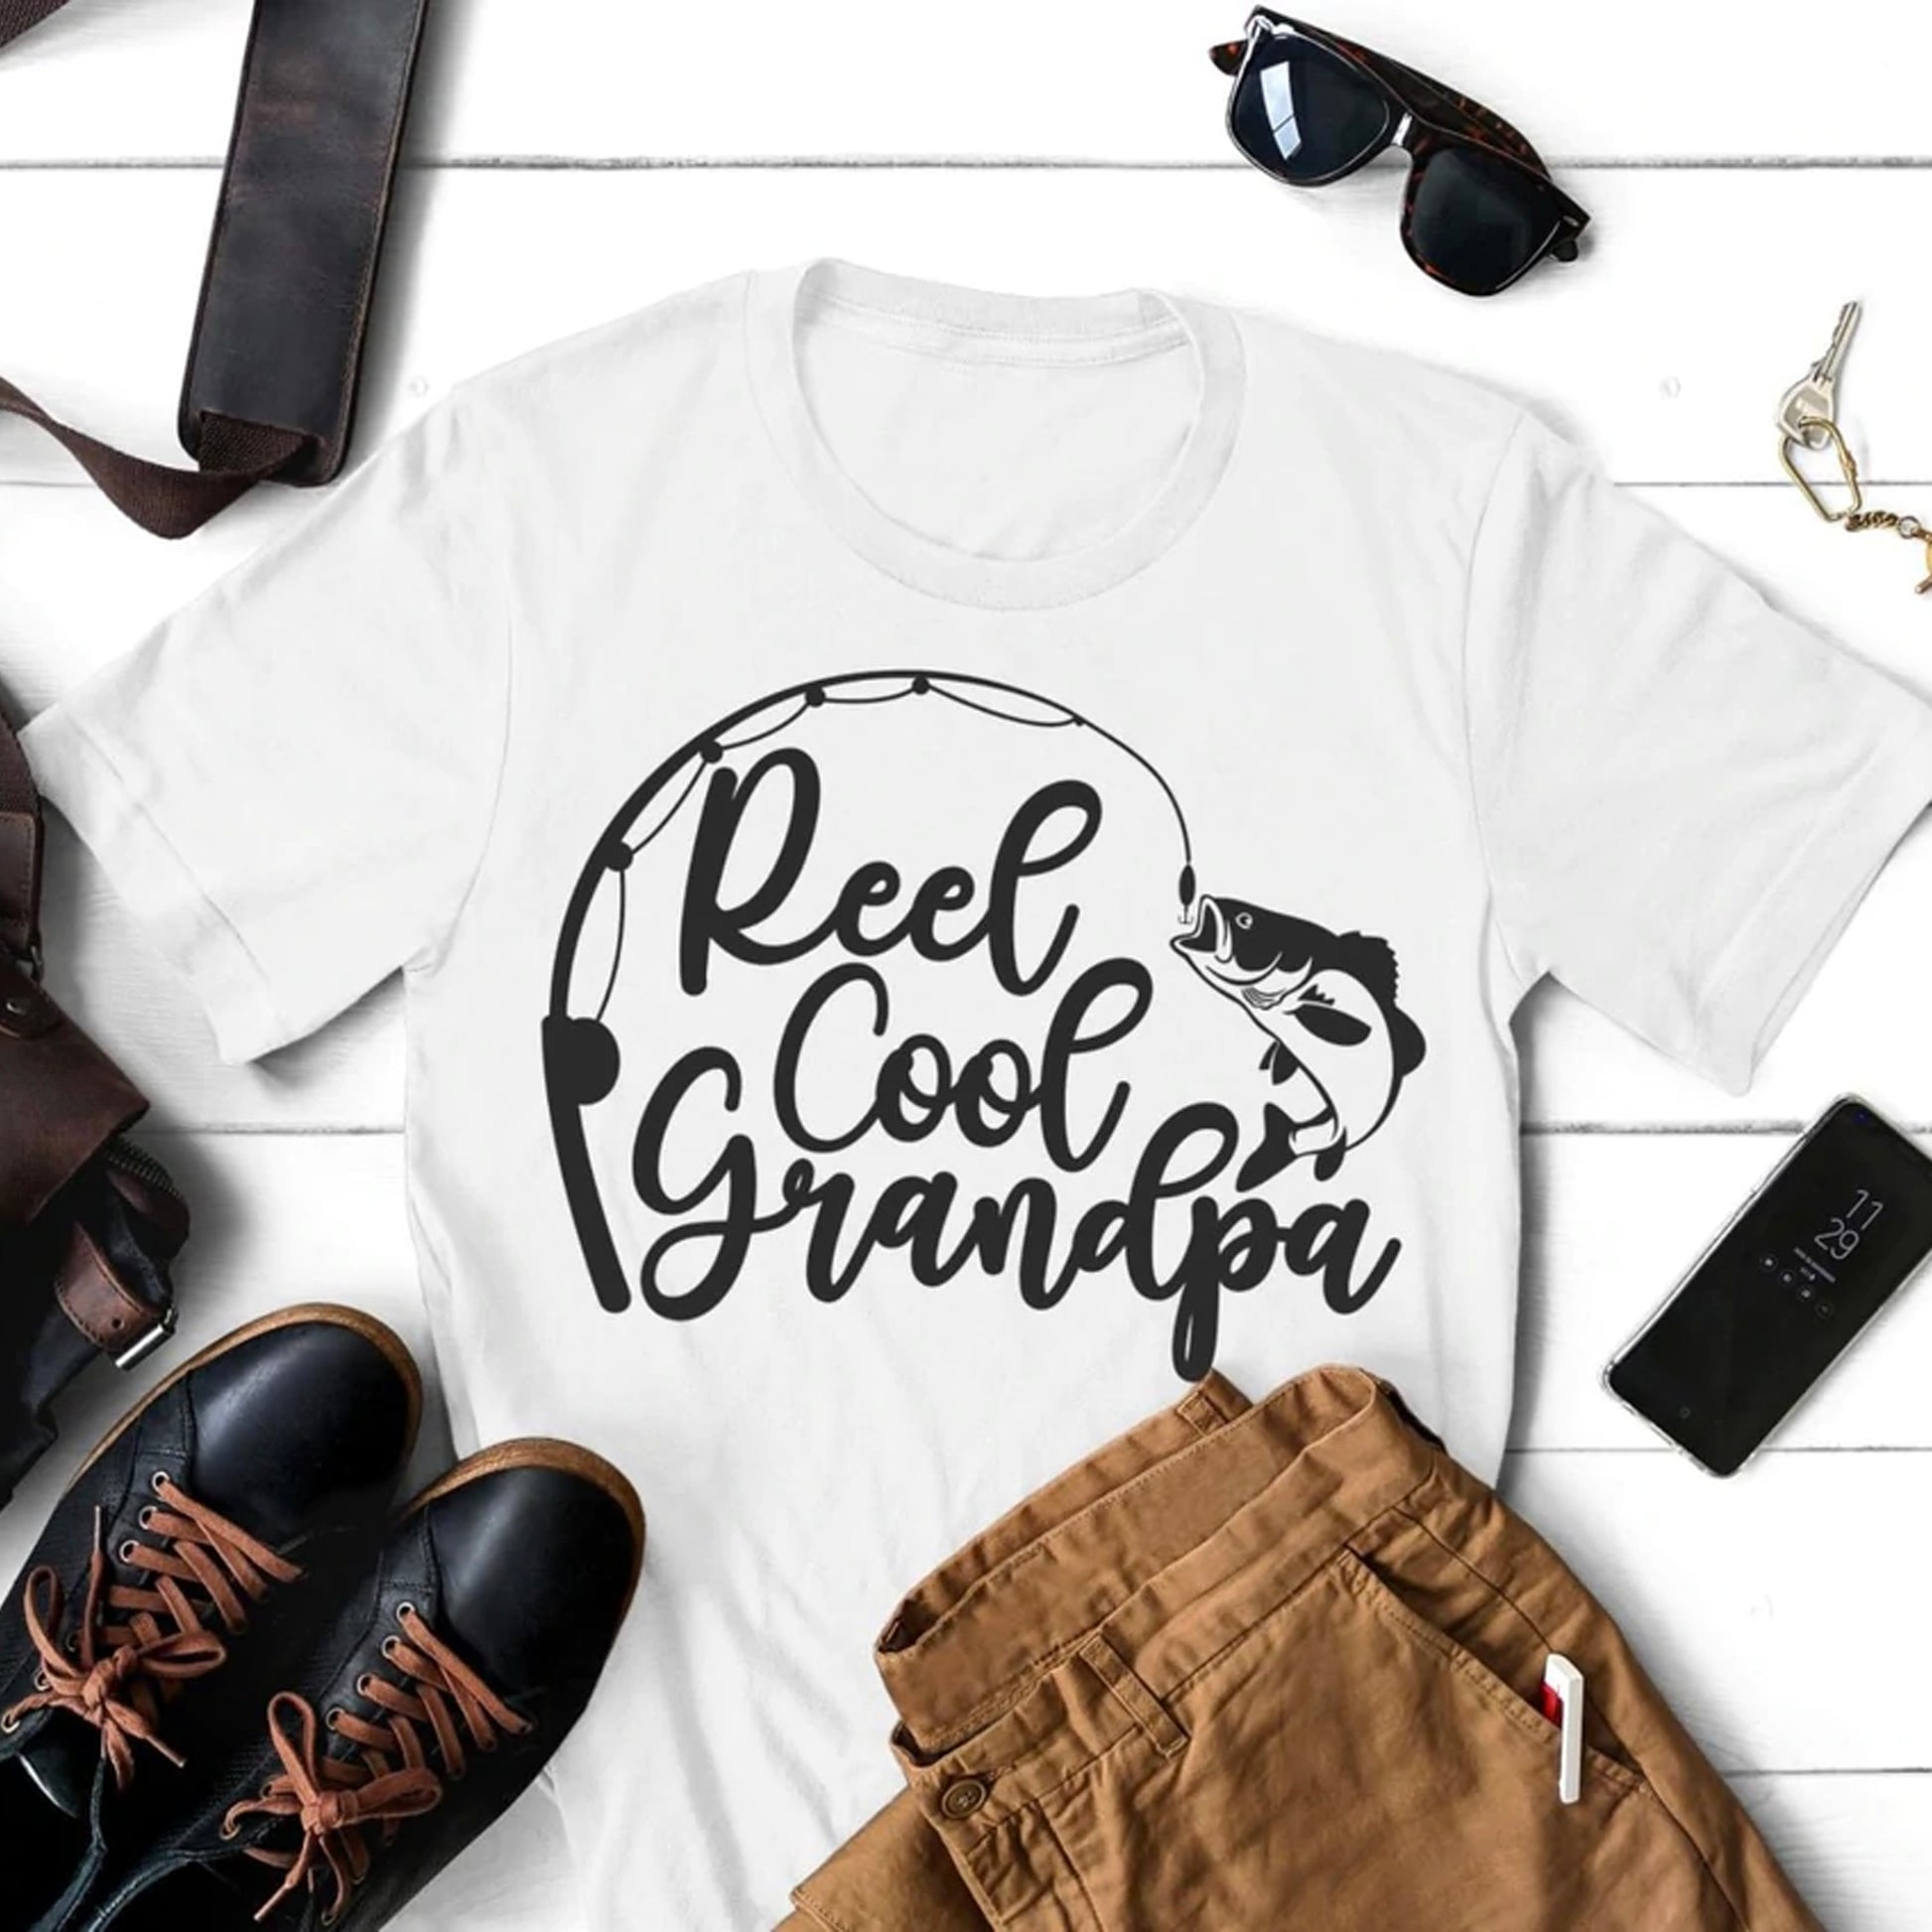 Reel Cool Grandpa png